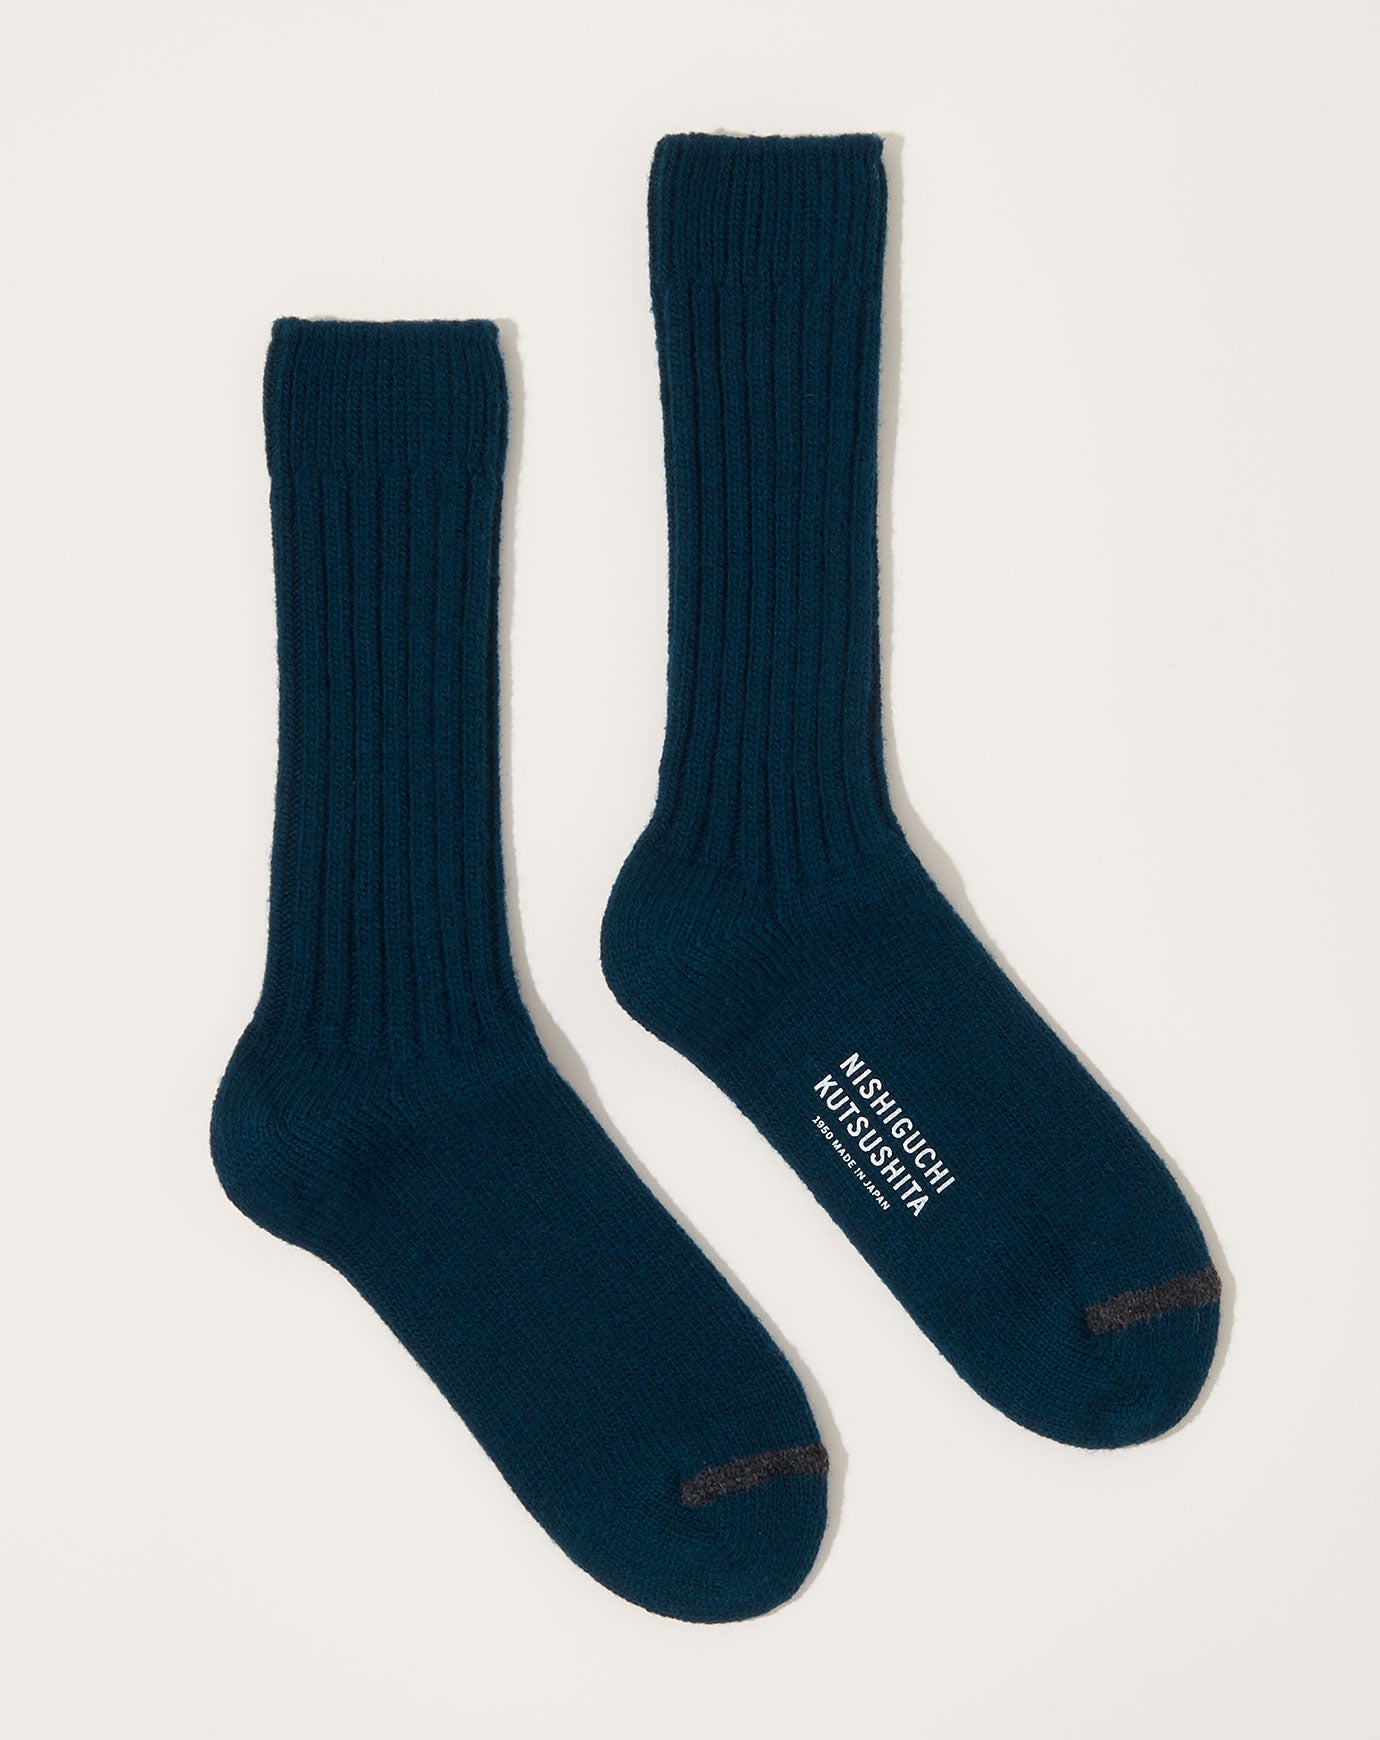 Nishiguchi Kutsushita Wool Ribbed Socks in Viridian